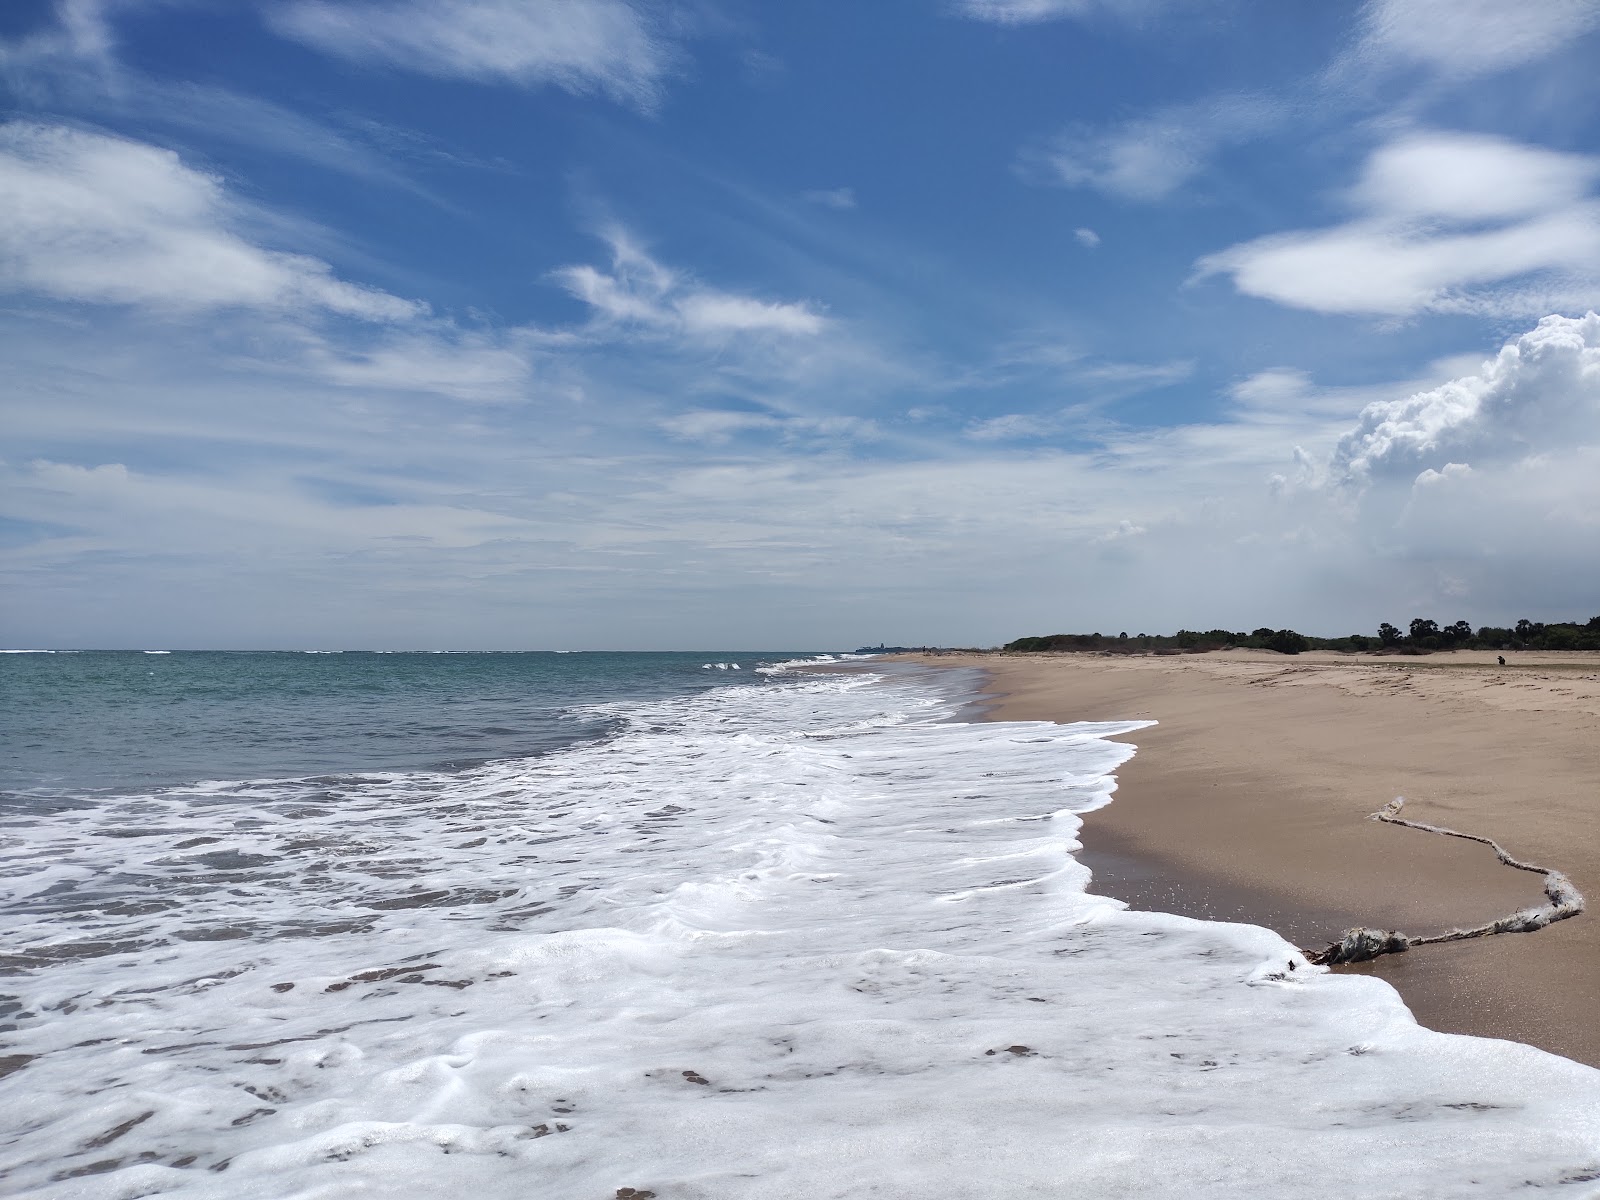 Fotografie cu Kayalpatnam Beach - locul popular printre cunoscătorii de relaxare